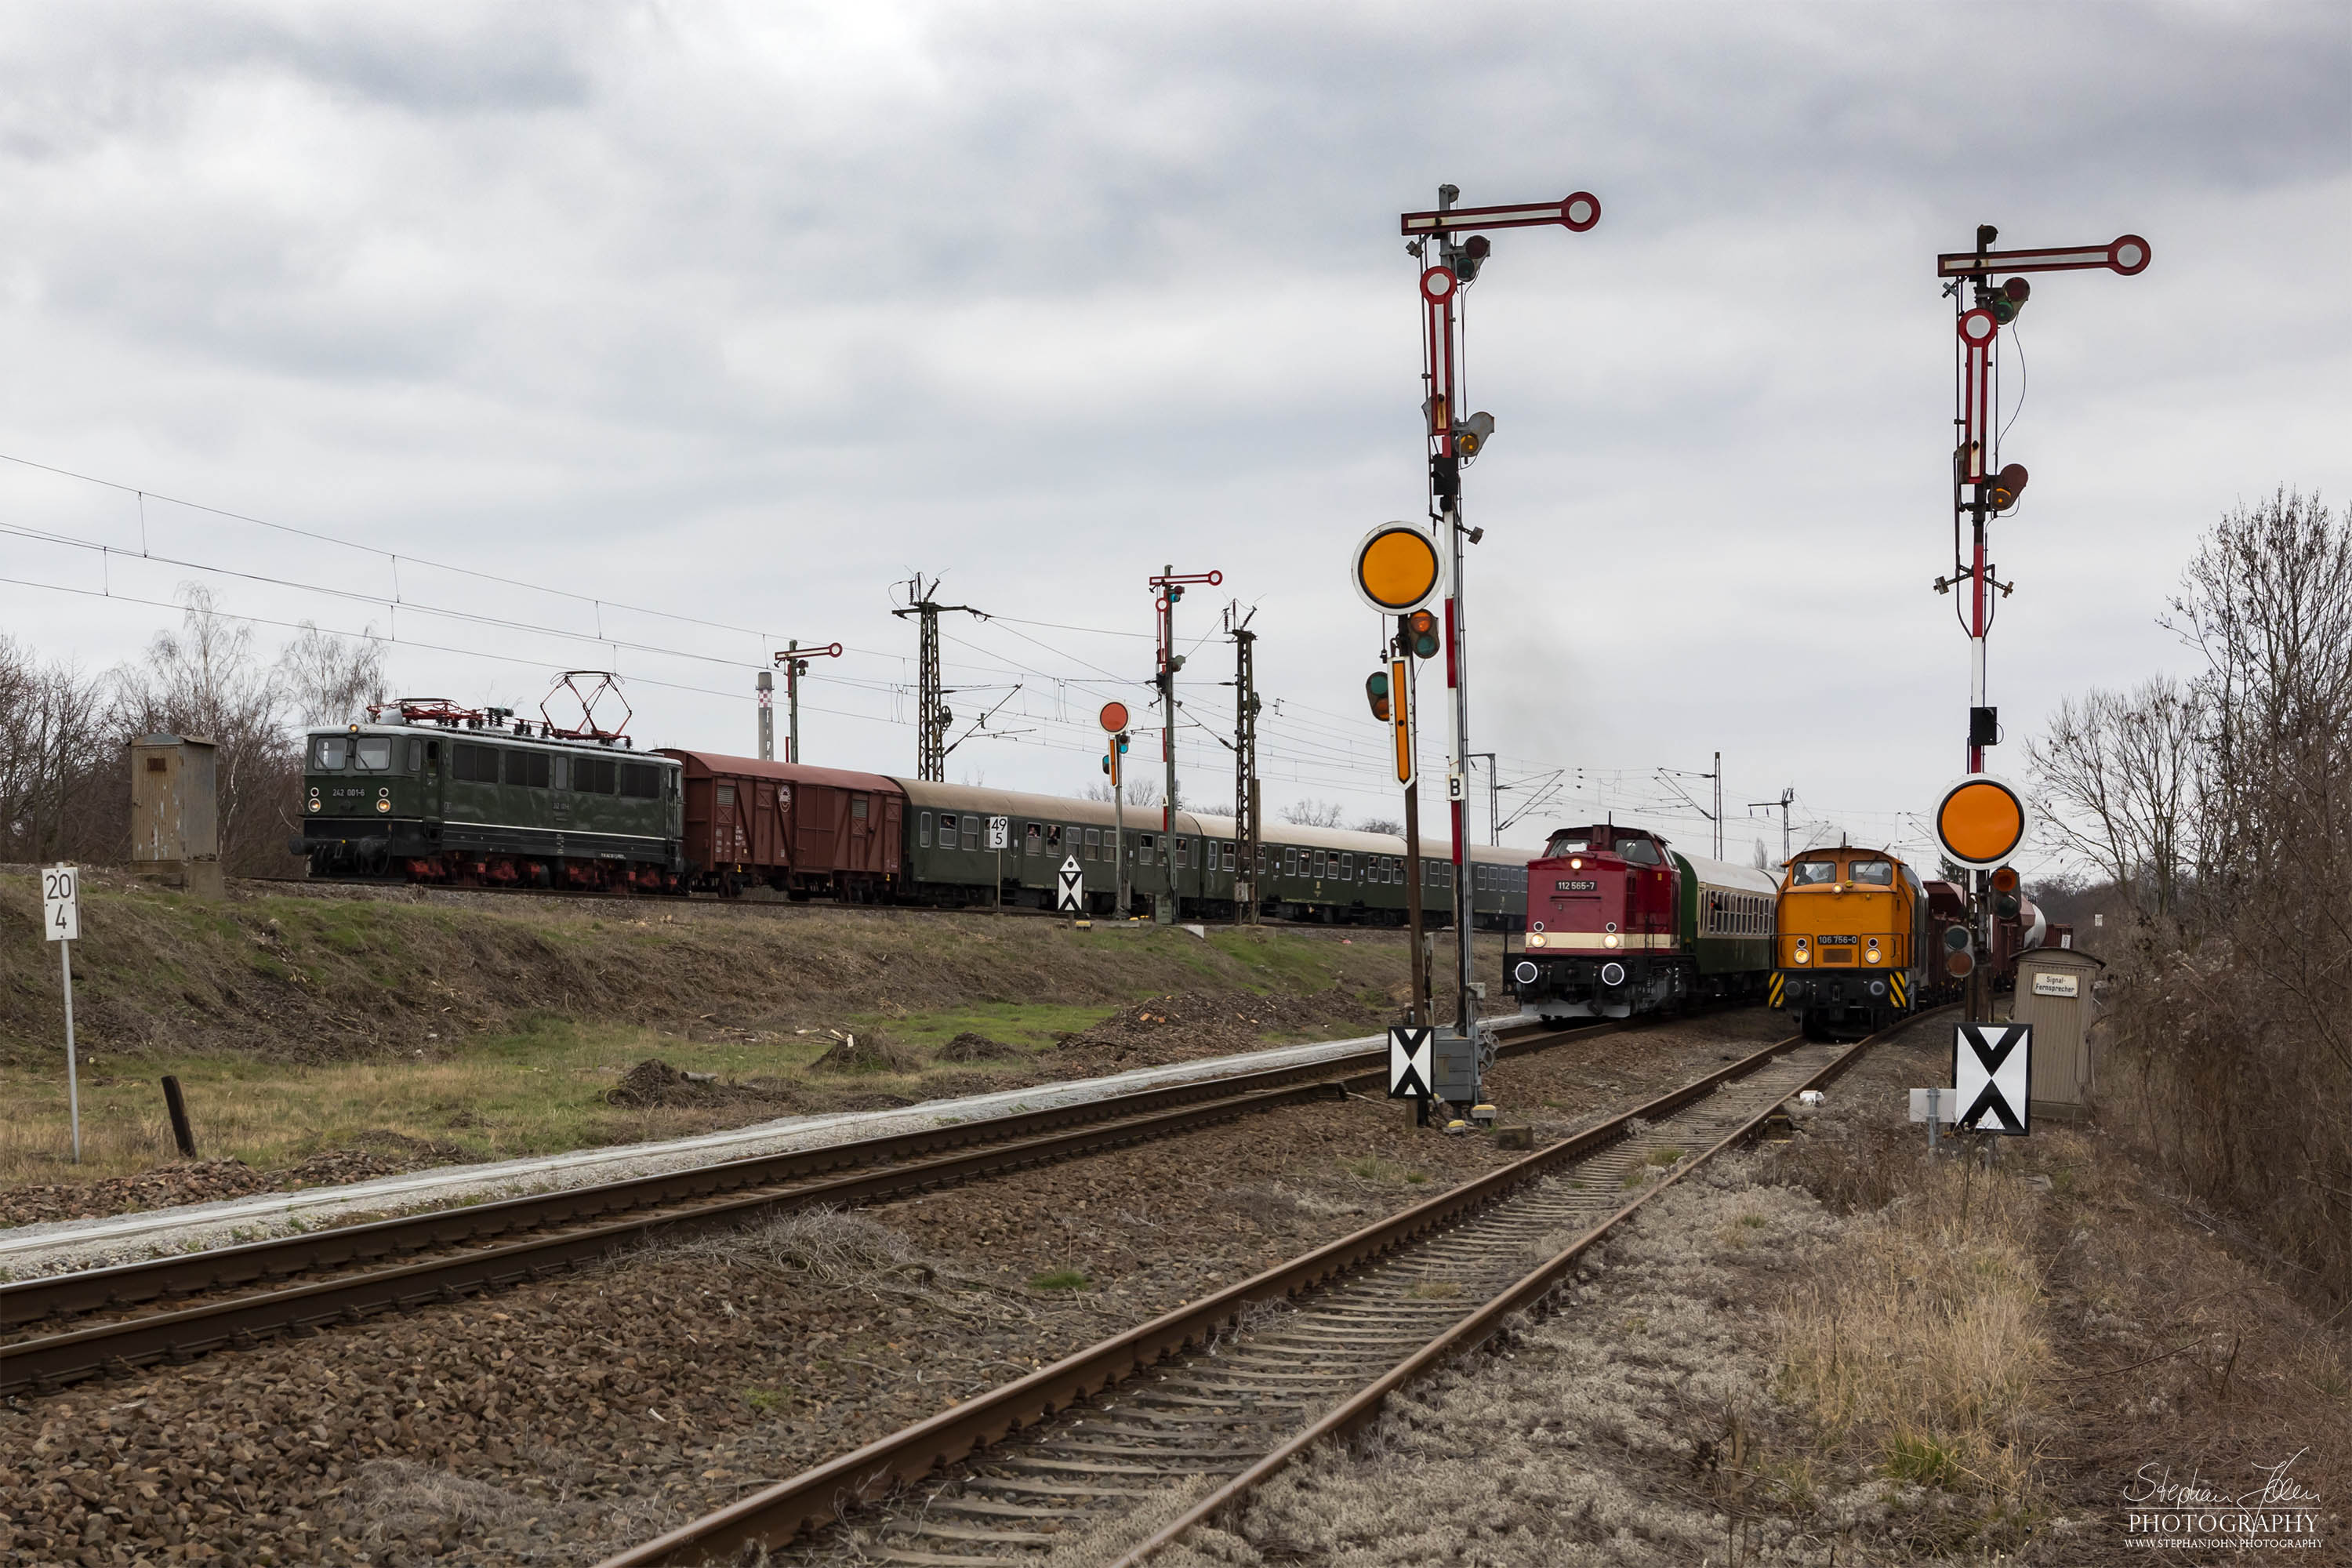 Zug 74328 mit Lok 242 001-6 nach Calbe, Zug 74327 mit Lok 112 565-7 nach Dessau und Güterzug 56558 mit Lok 106 756-0 nach Aken verlassen den bahnhof Köthen